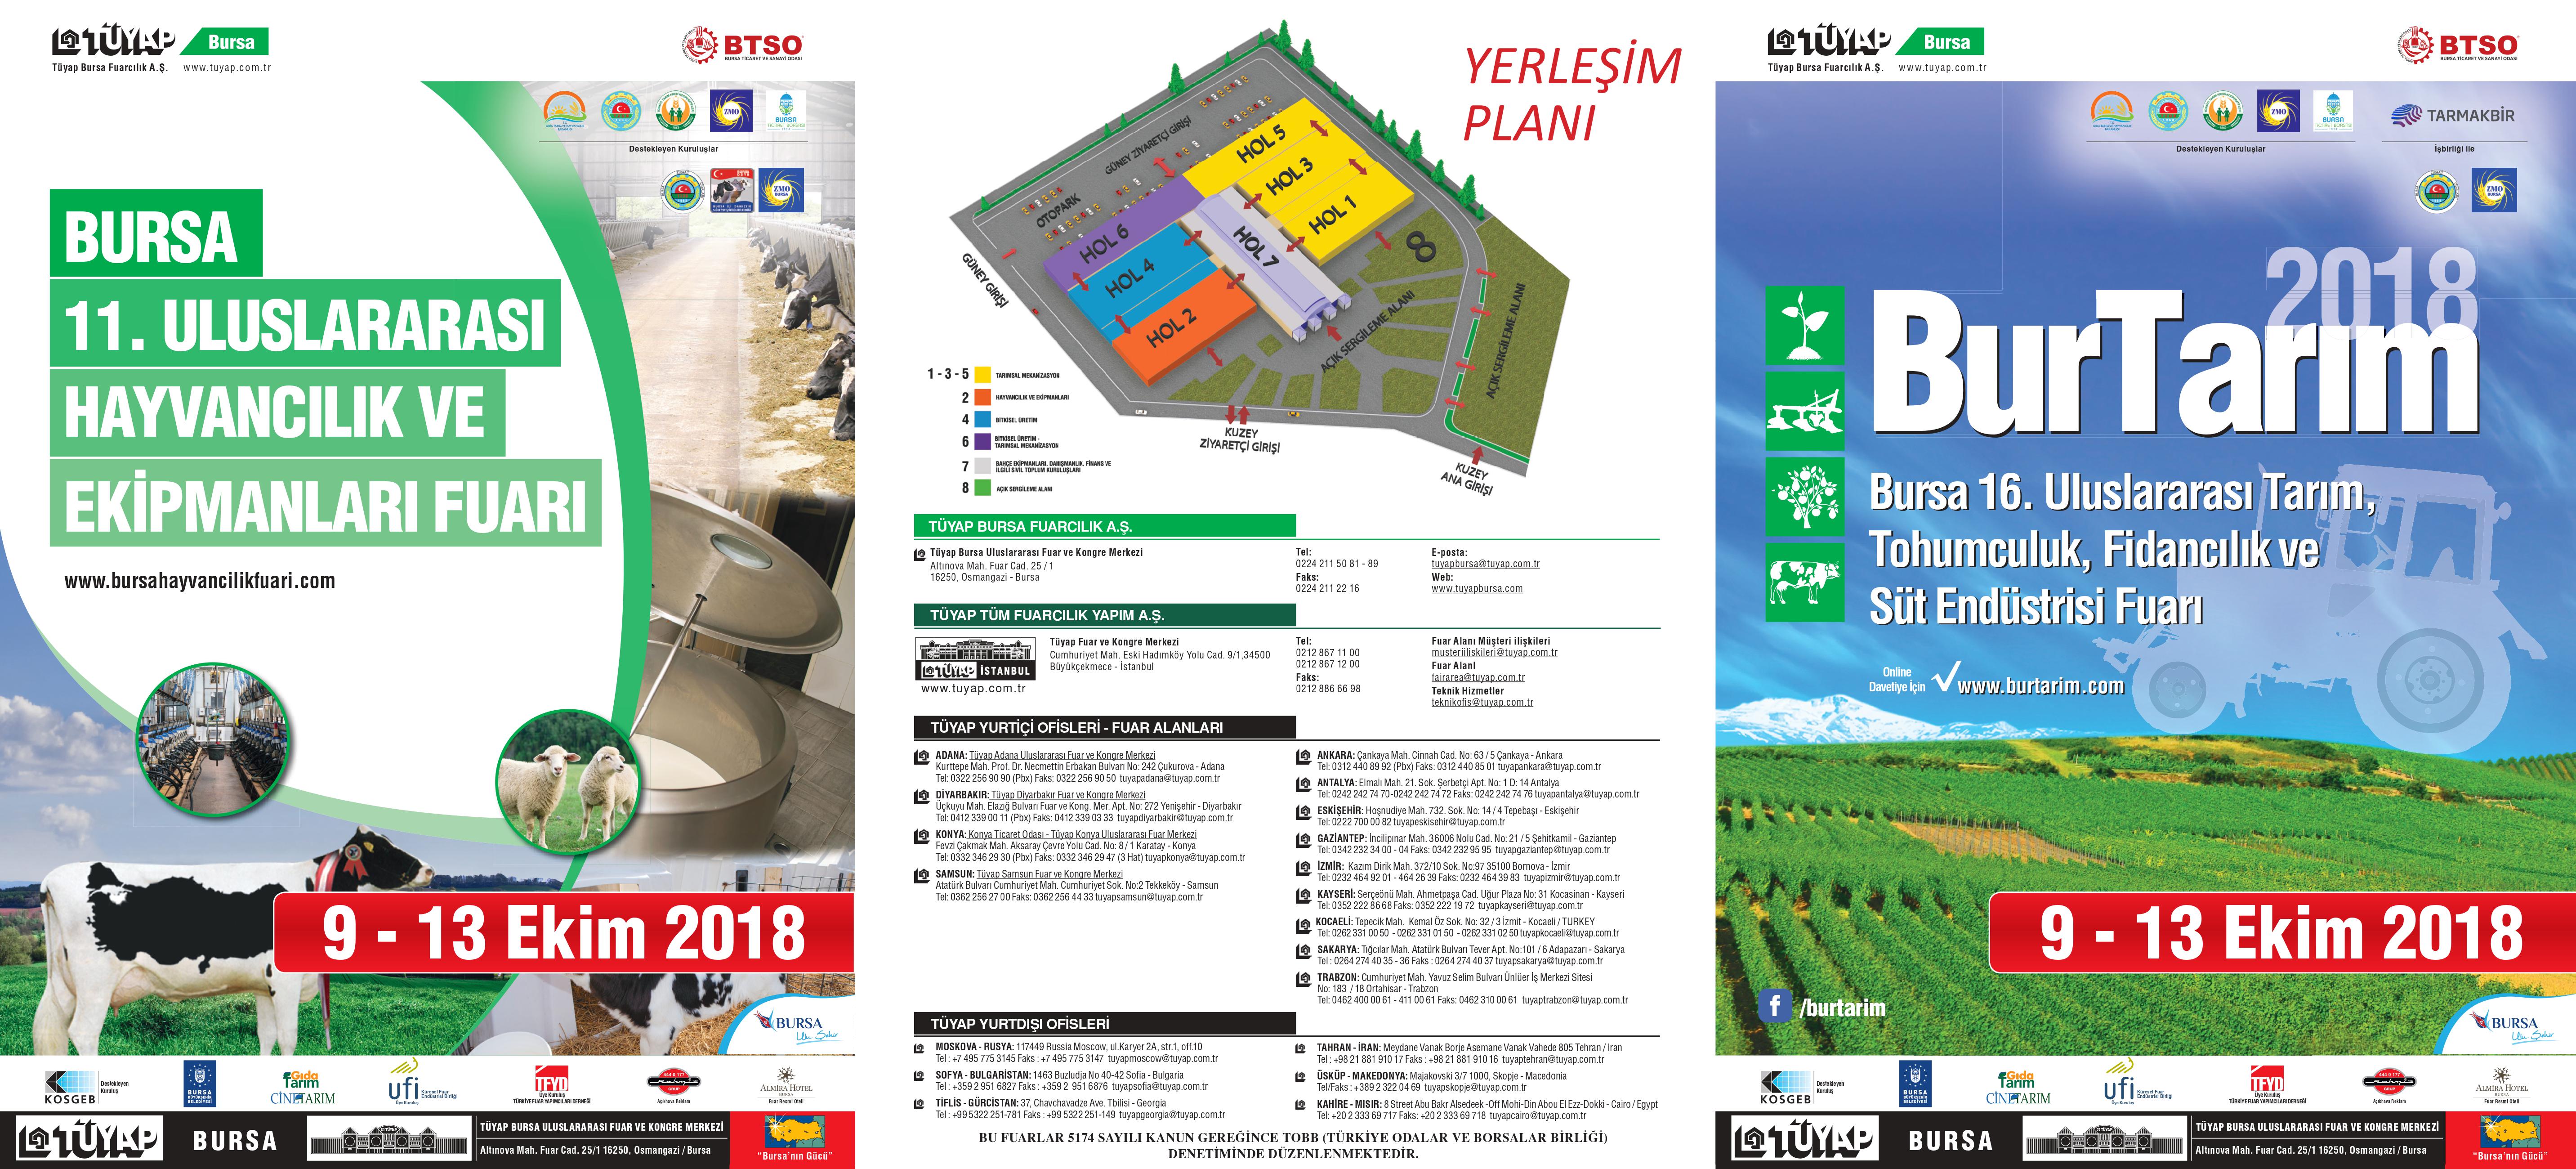 Bursa Tarım ve Hayvancılık Fuarları 09-13 Ekim 2018 tarihleri arasında Tüyap Bursa'da organize edilecektir.